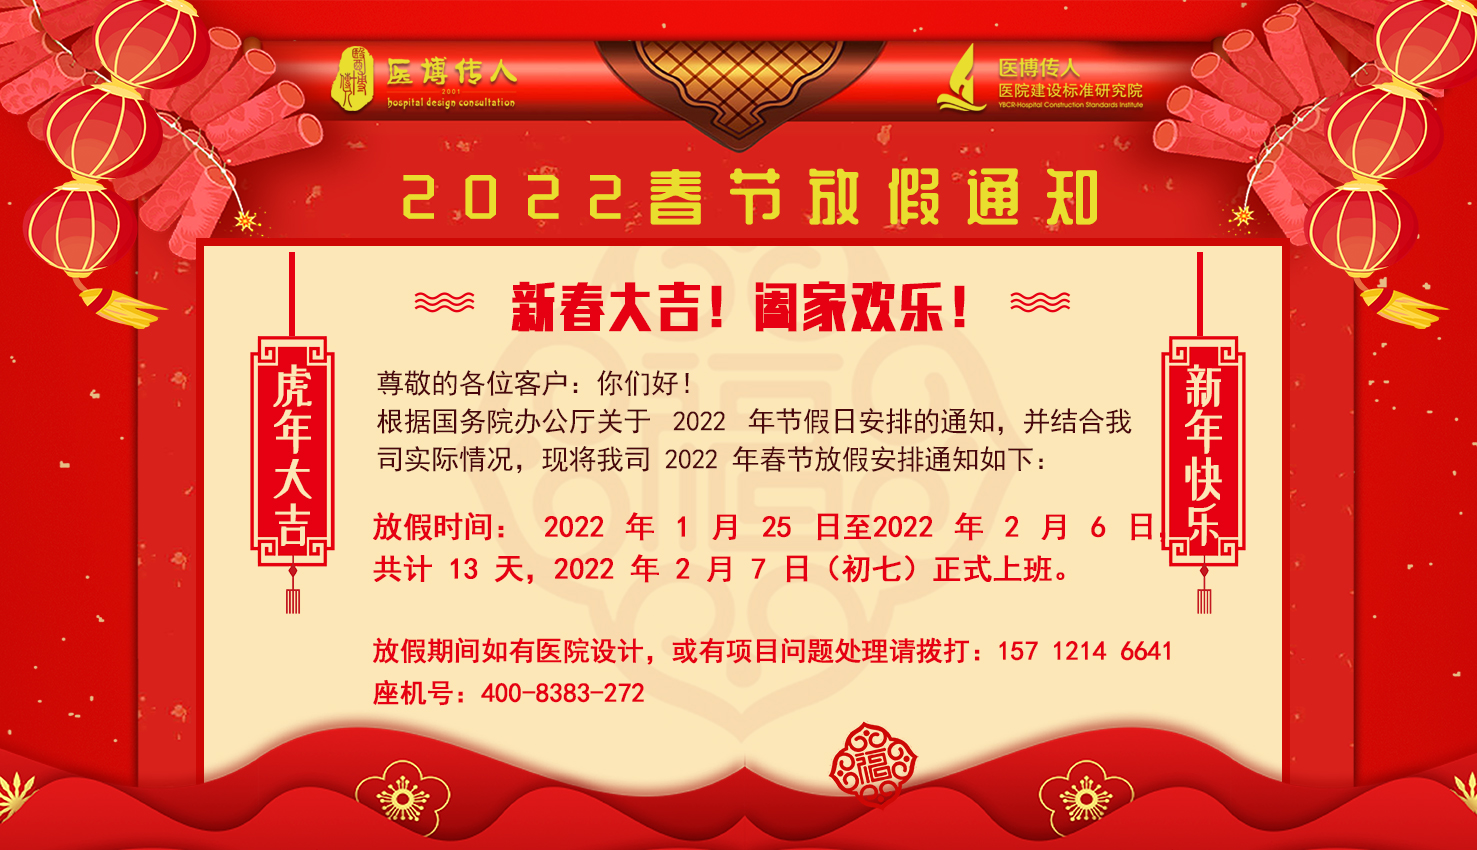 2022年医博传人春节放假安排通知